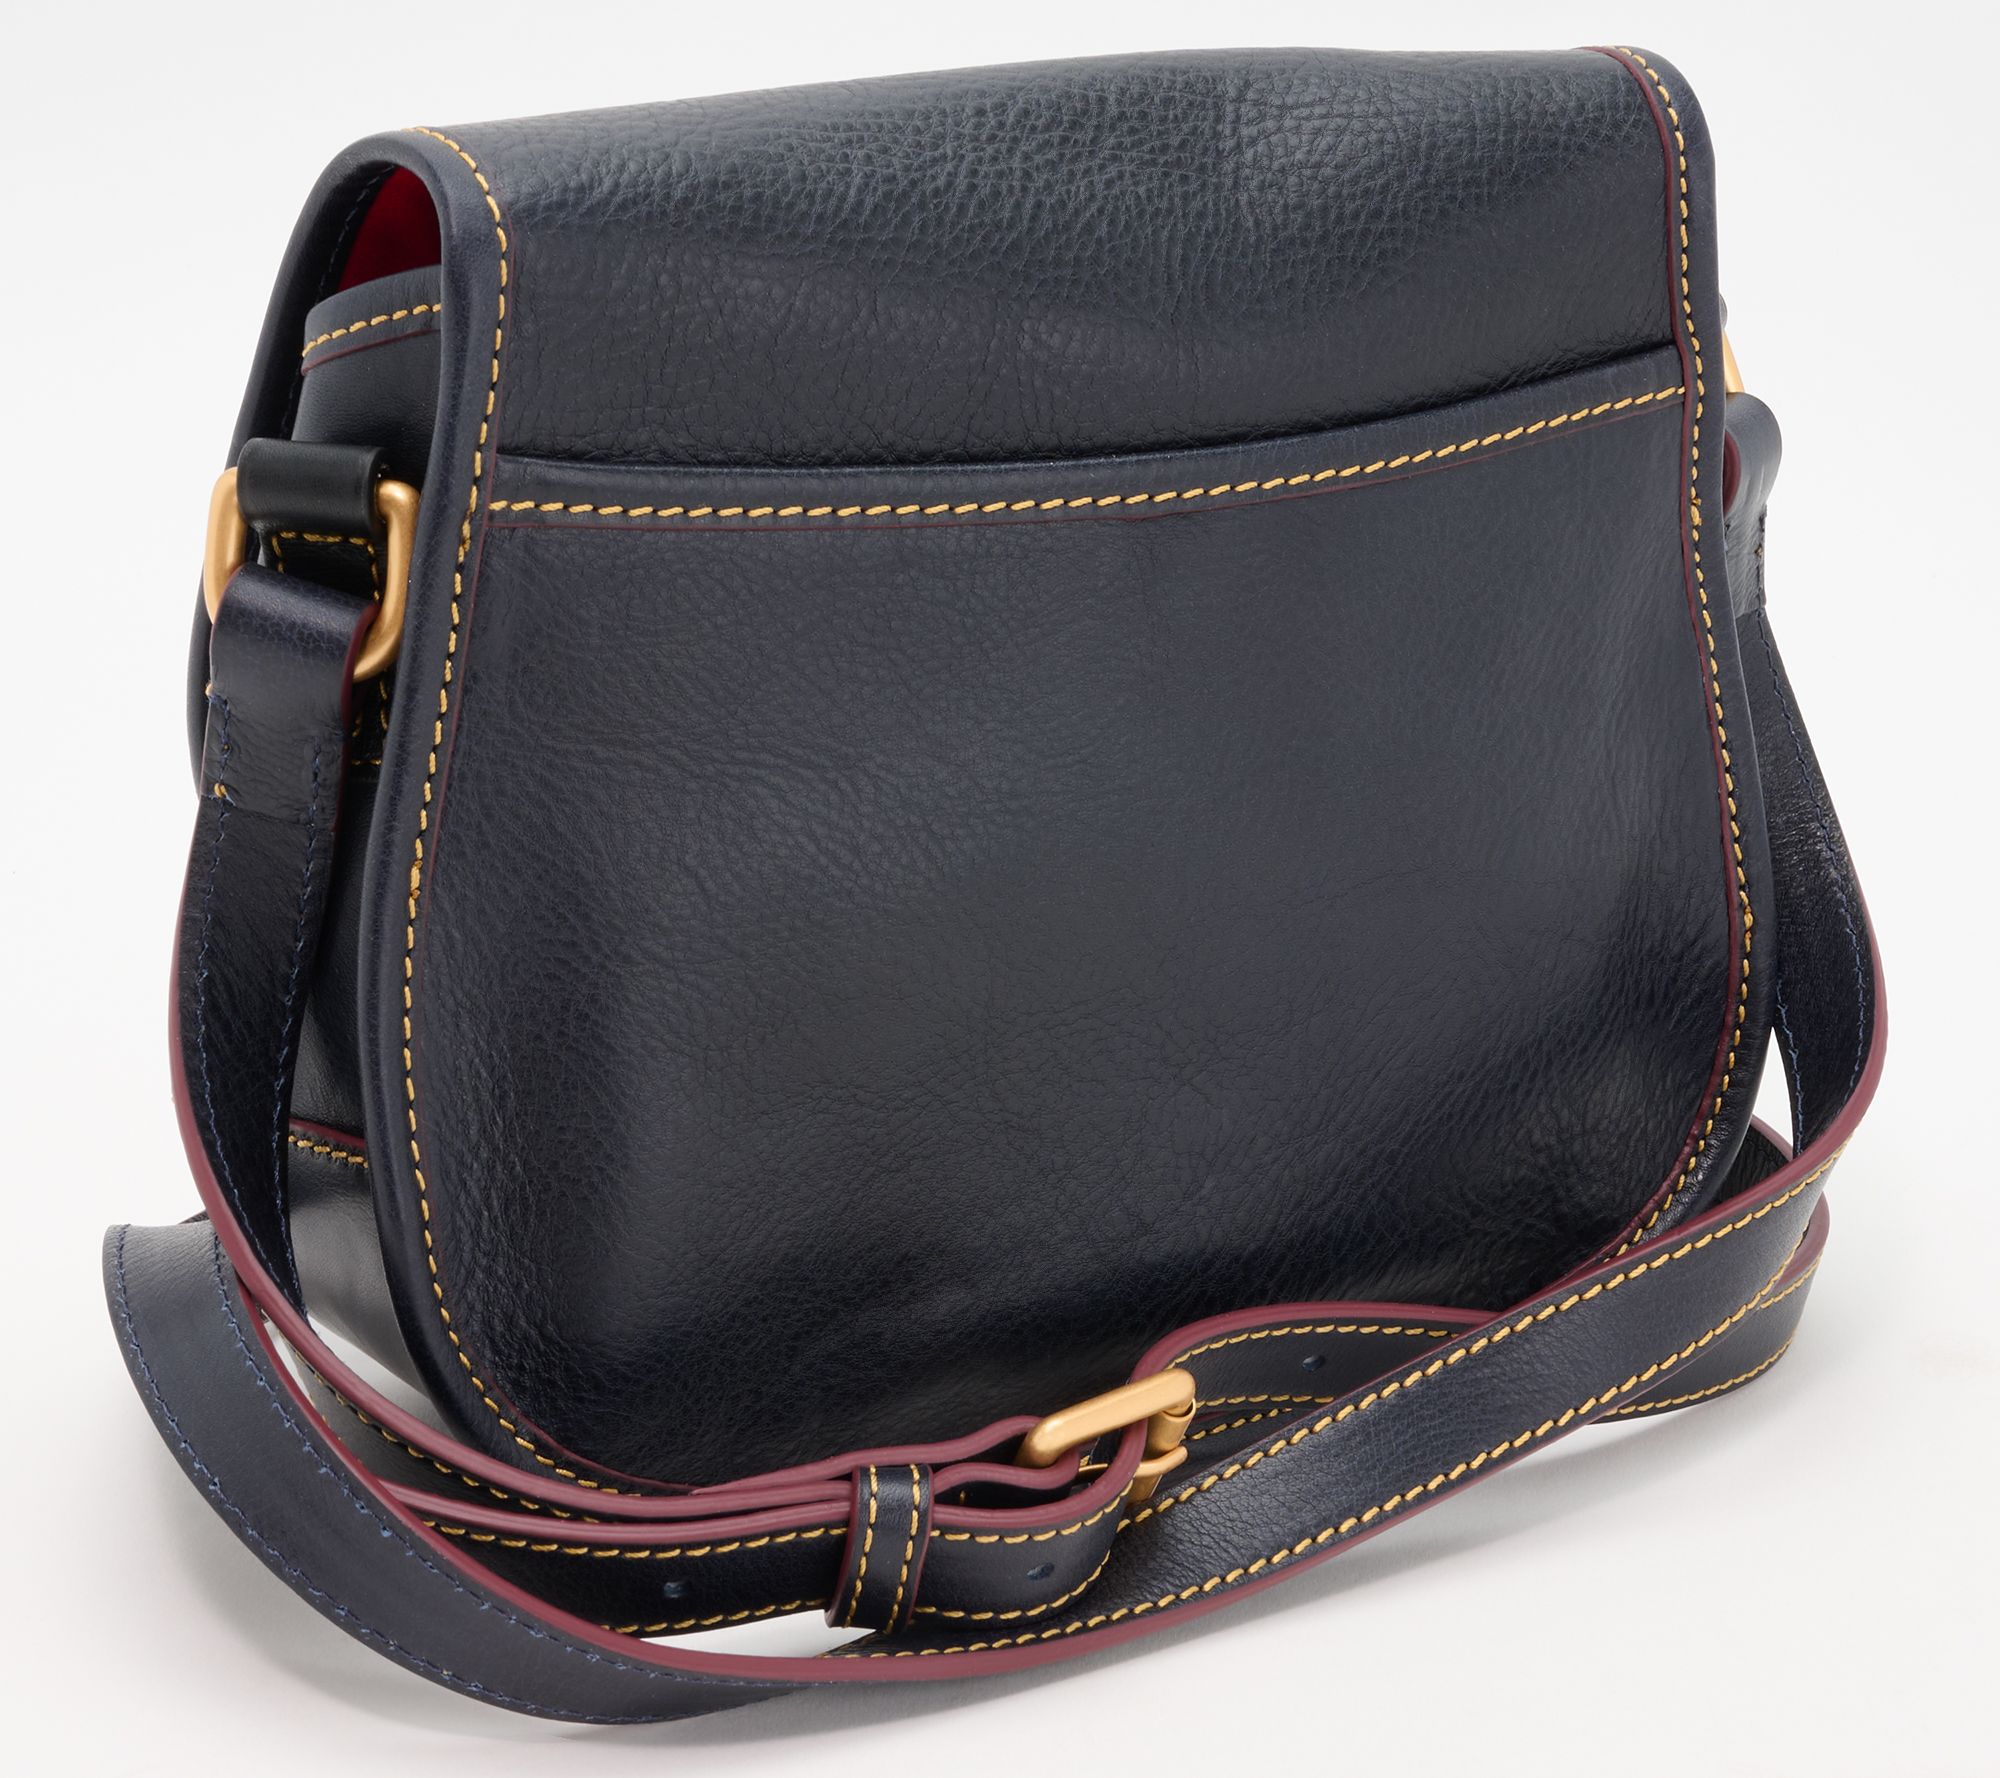 Saddle Val 4 Pocket Hobo Bag with Removable Crossbody